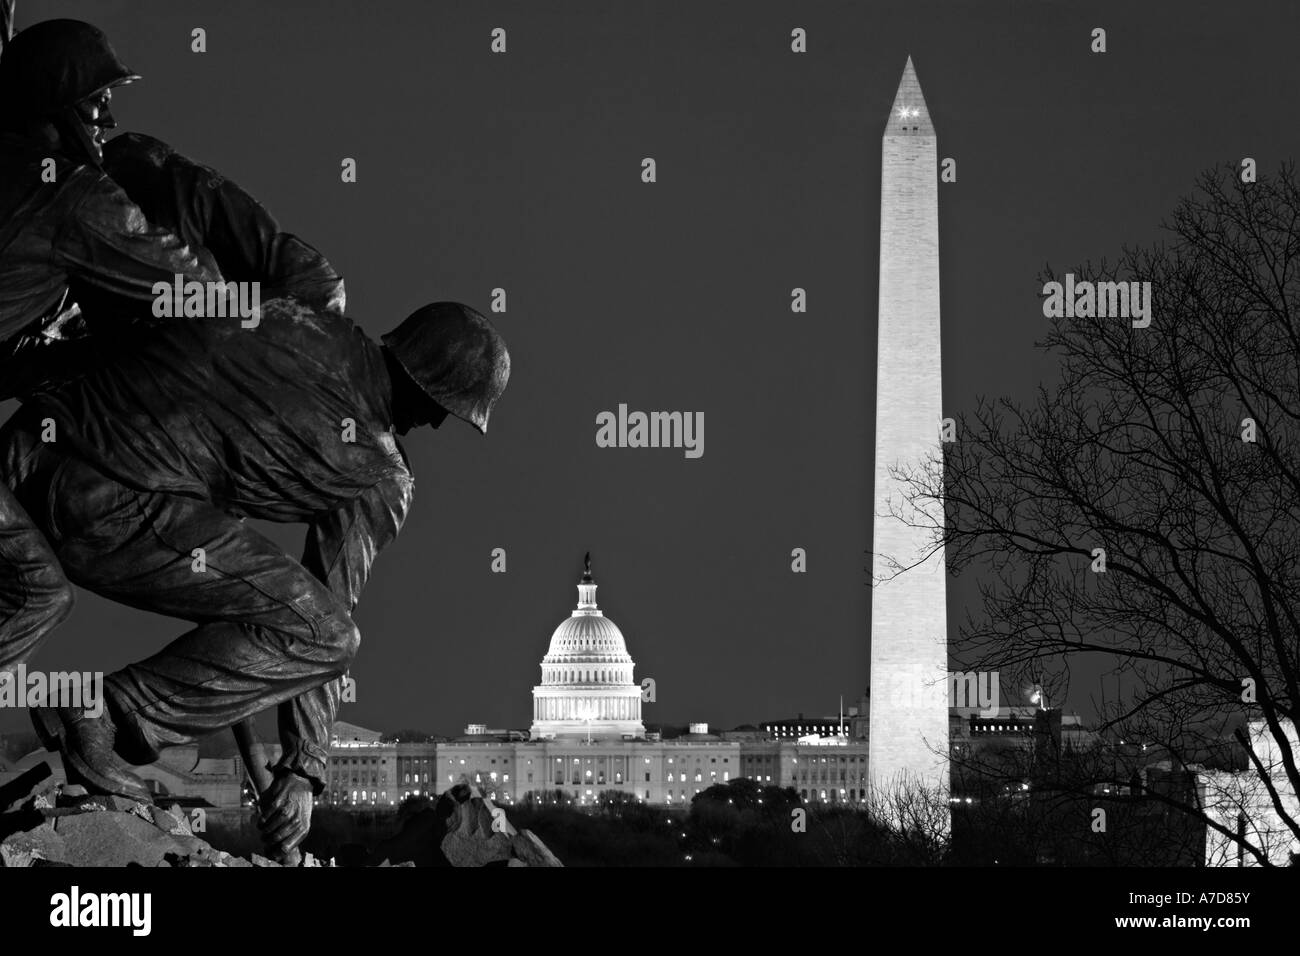 Arlington Marine Corps War Memorial aka como el Iwo Jima estatua; el monumento a Lincoln, el Monumento a Washington y el Capitolio de los Estados Unidos. DC USA Foto de stock